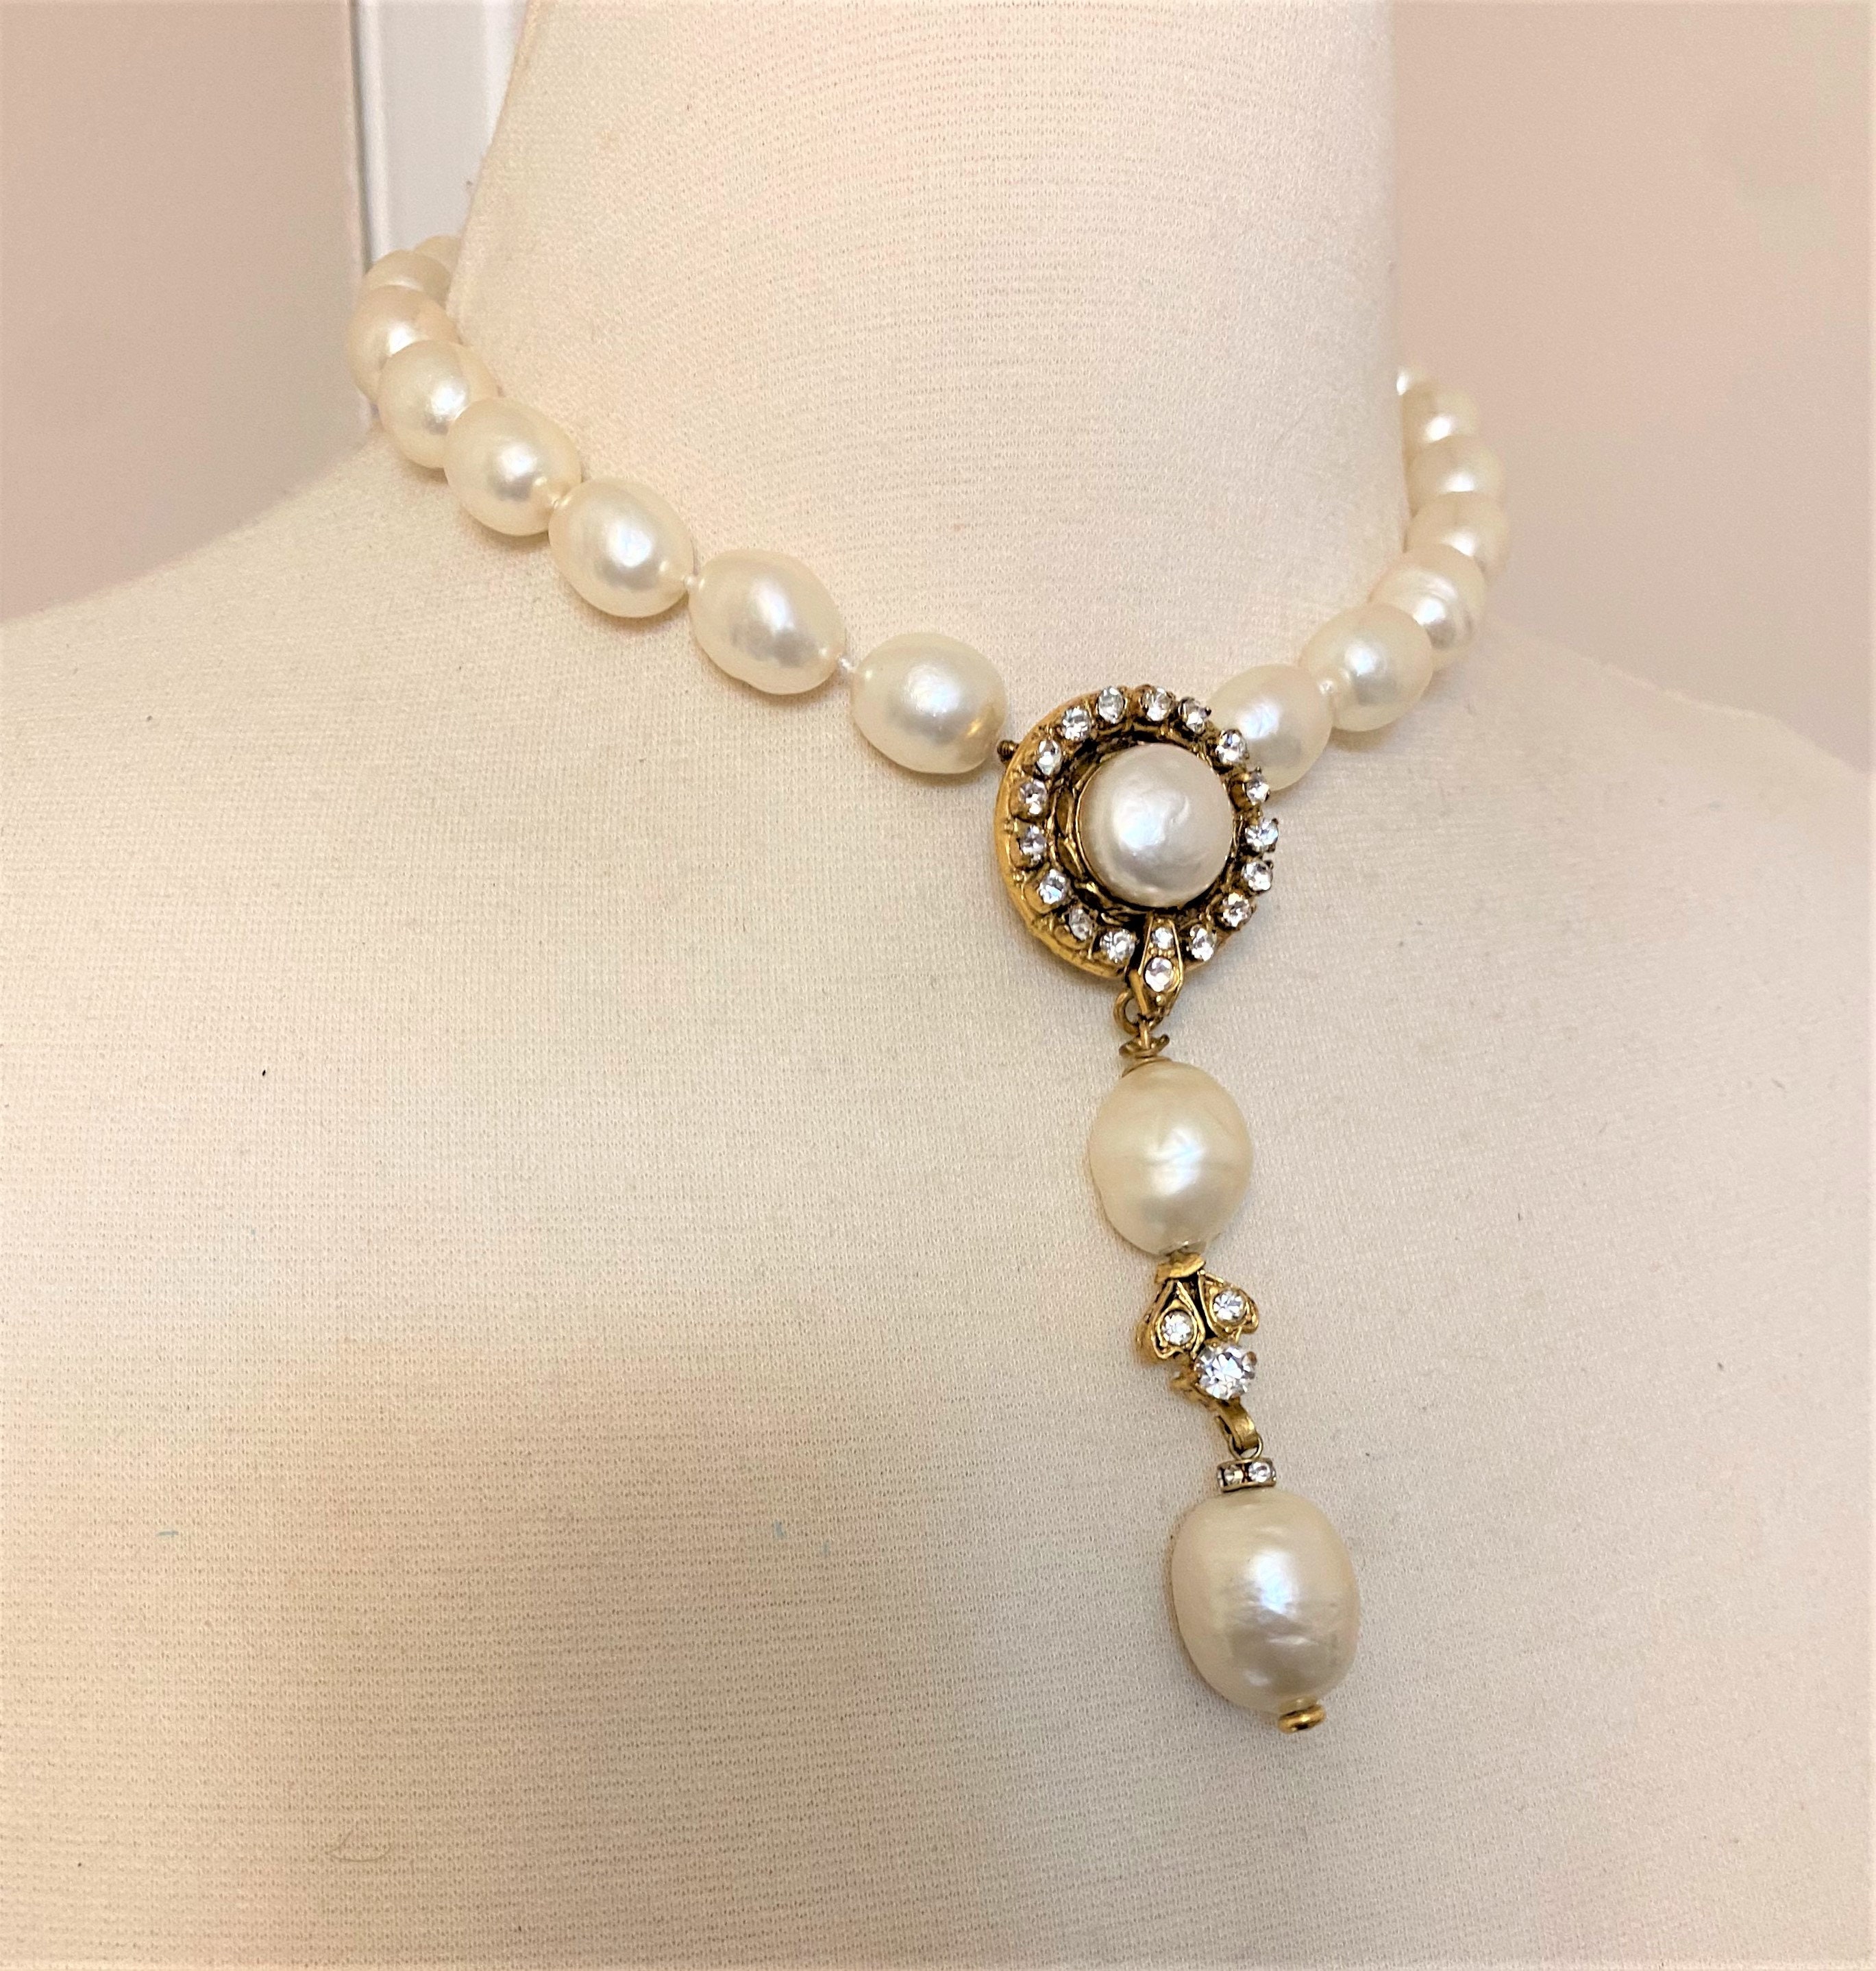 Vintage Faux Opal Floral Pendant & Gold Tone Chain Minimalist Necklace